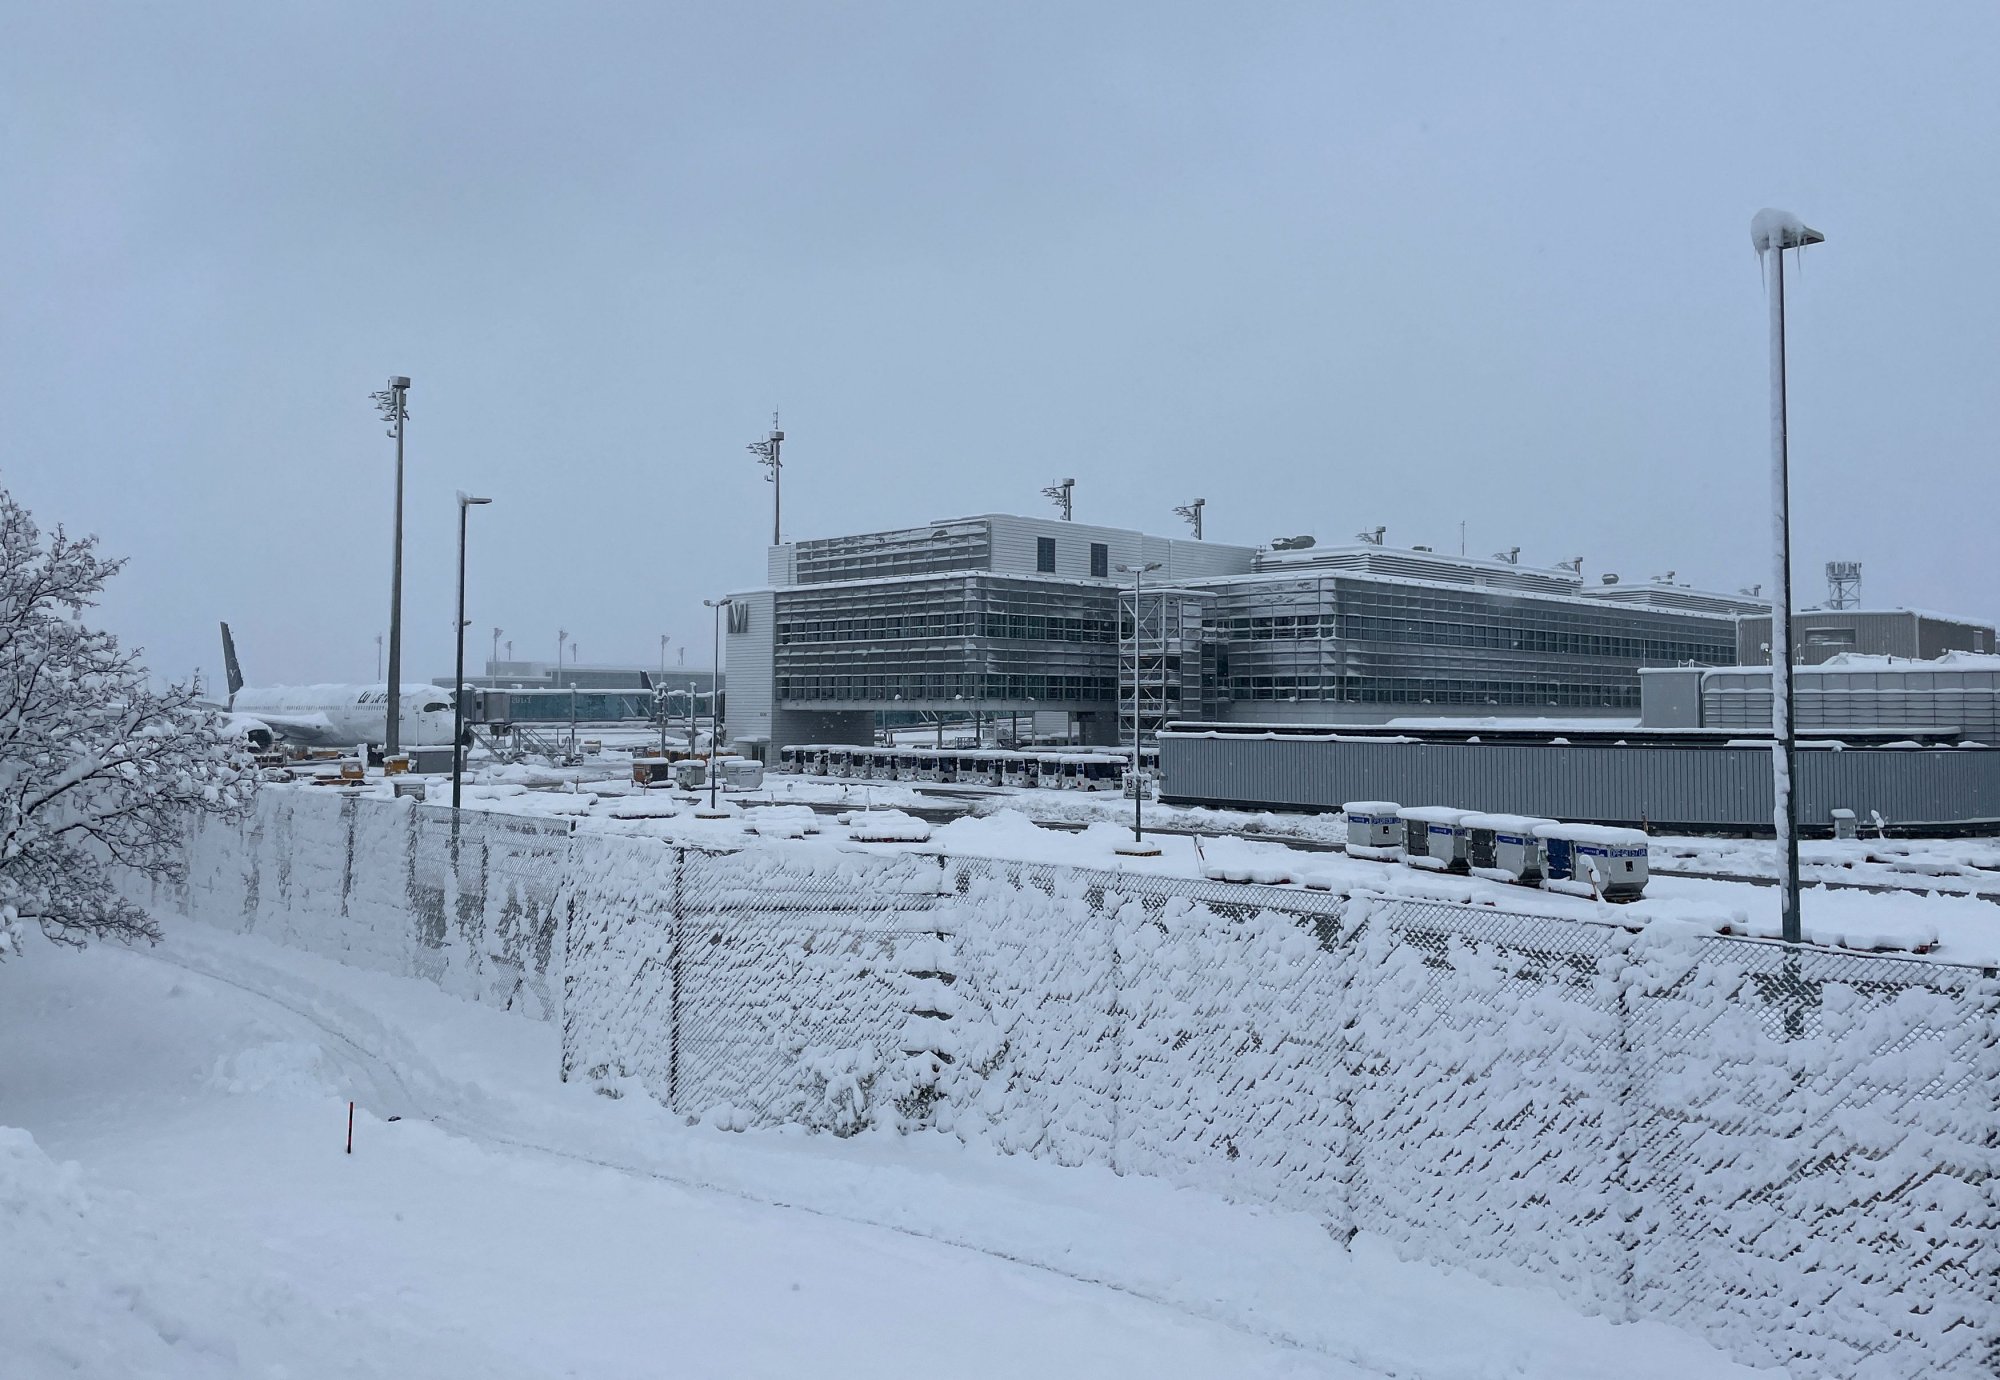 Χάος στο αεροδρόμιο του Μονάχου λόγω χιονόπτωσης - Η μαρτυρία Έλληνα εγκλωβισμένου